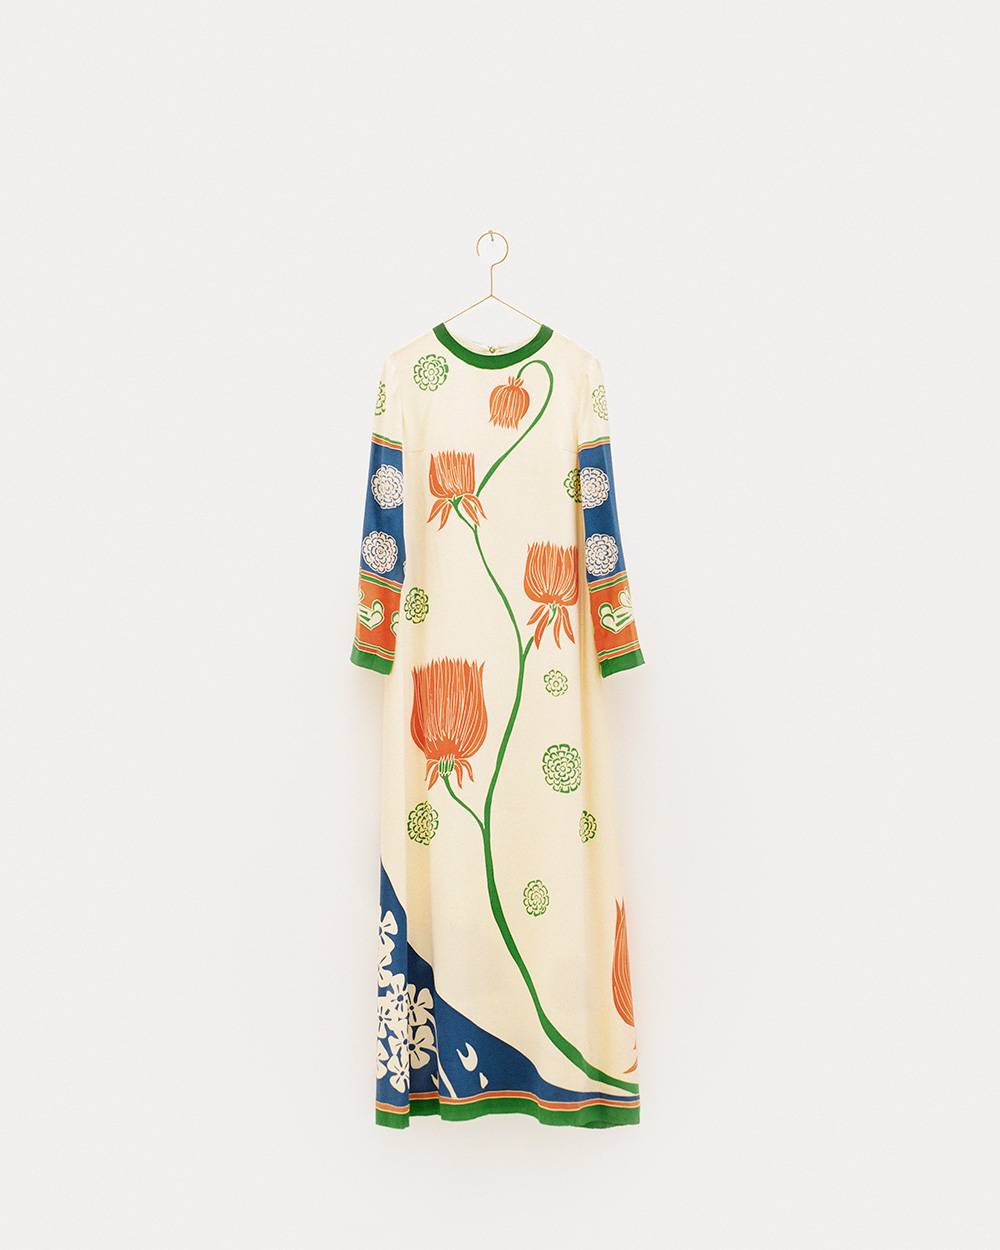 Sukienka Astoria zaprojektowana przez Karla Lagerfelda, Chloé wiosna-lato 1967, jedwab ręcznie malowany przez Nicole Lefort (© Chloé Archive, Paris, Fot. Julien T. Hamon, dzięki uprzejmości Jewish Museum, NY)